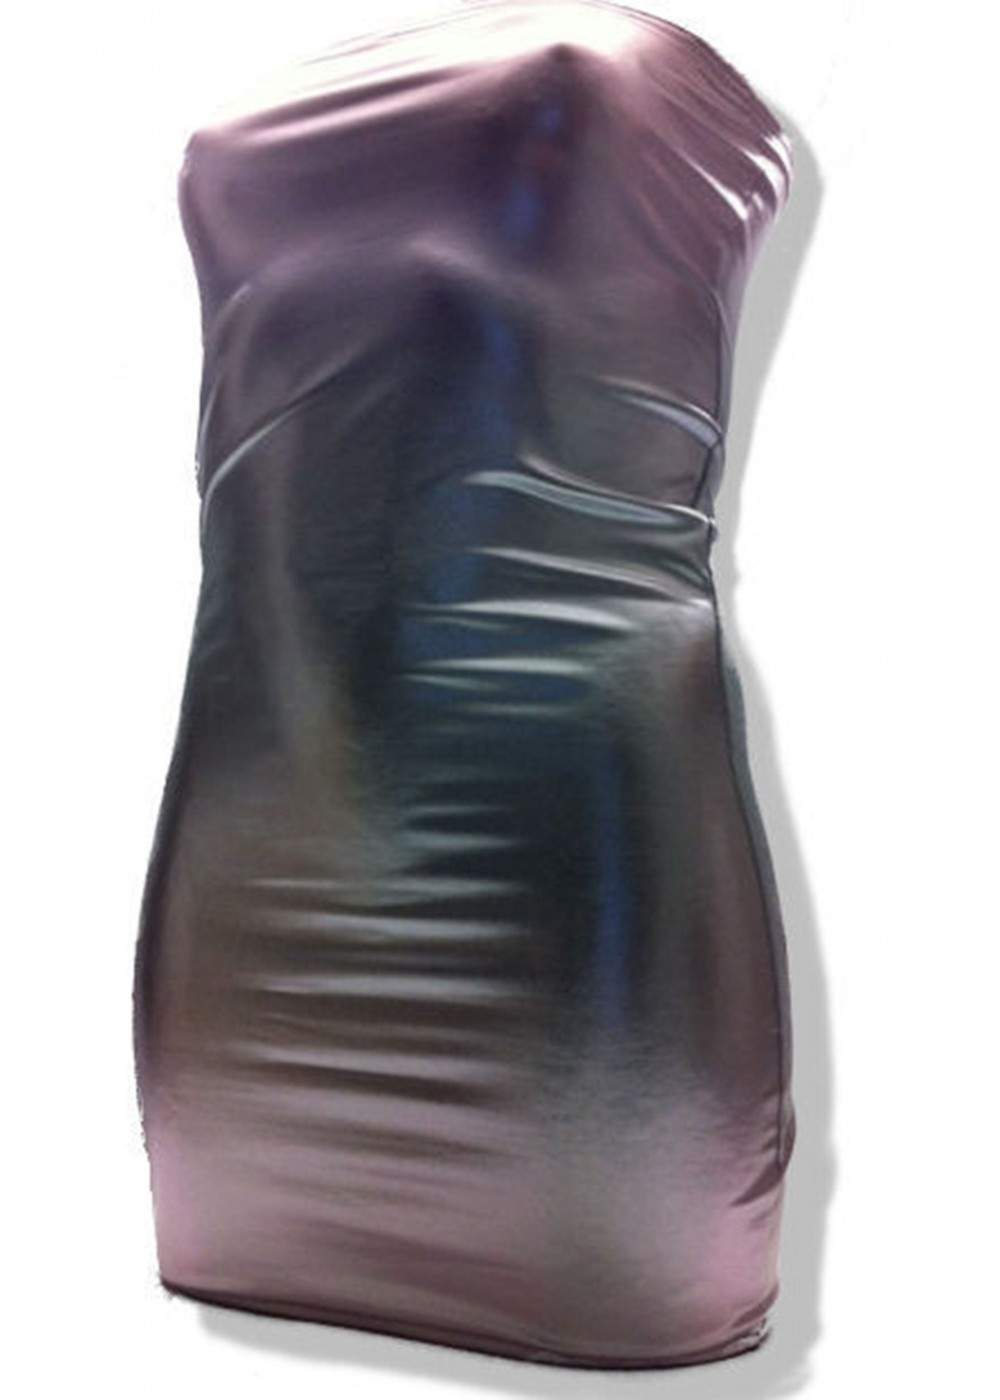 Silbernes Bandeau Kleid Größen 44 - 52 viele Längen ab 25,00 € - 